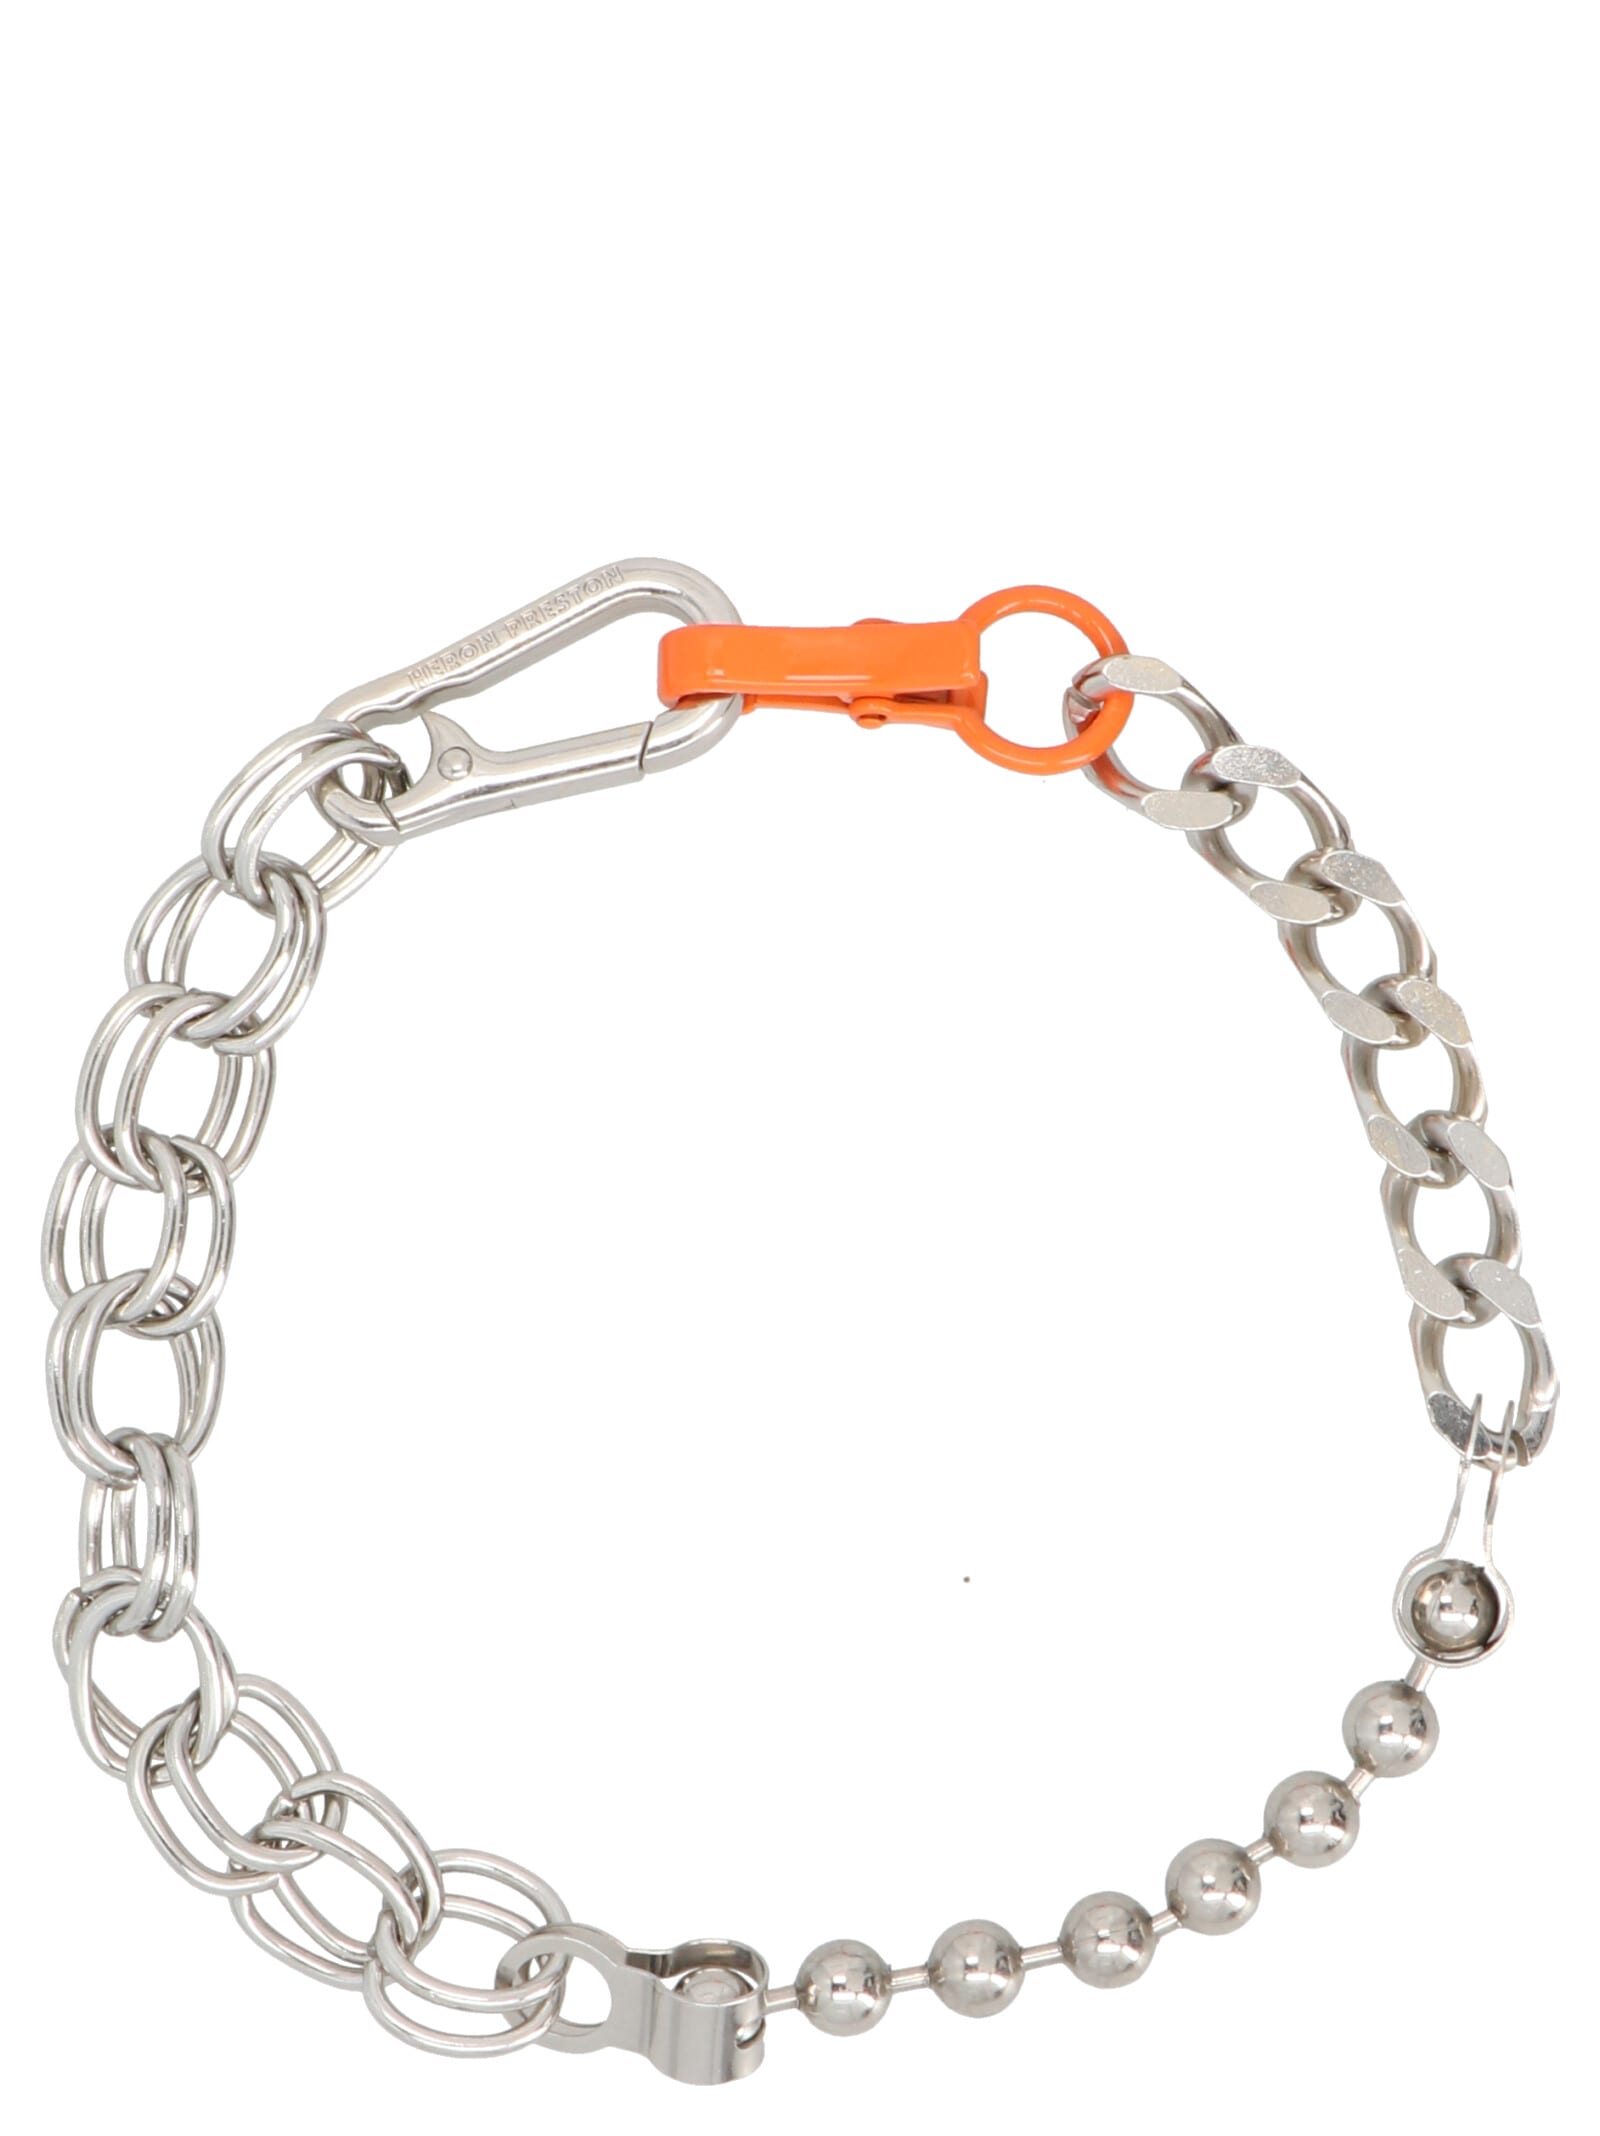 HERON PRESTON Multi Chain Necklace